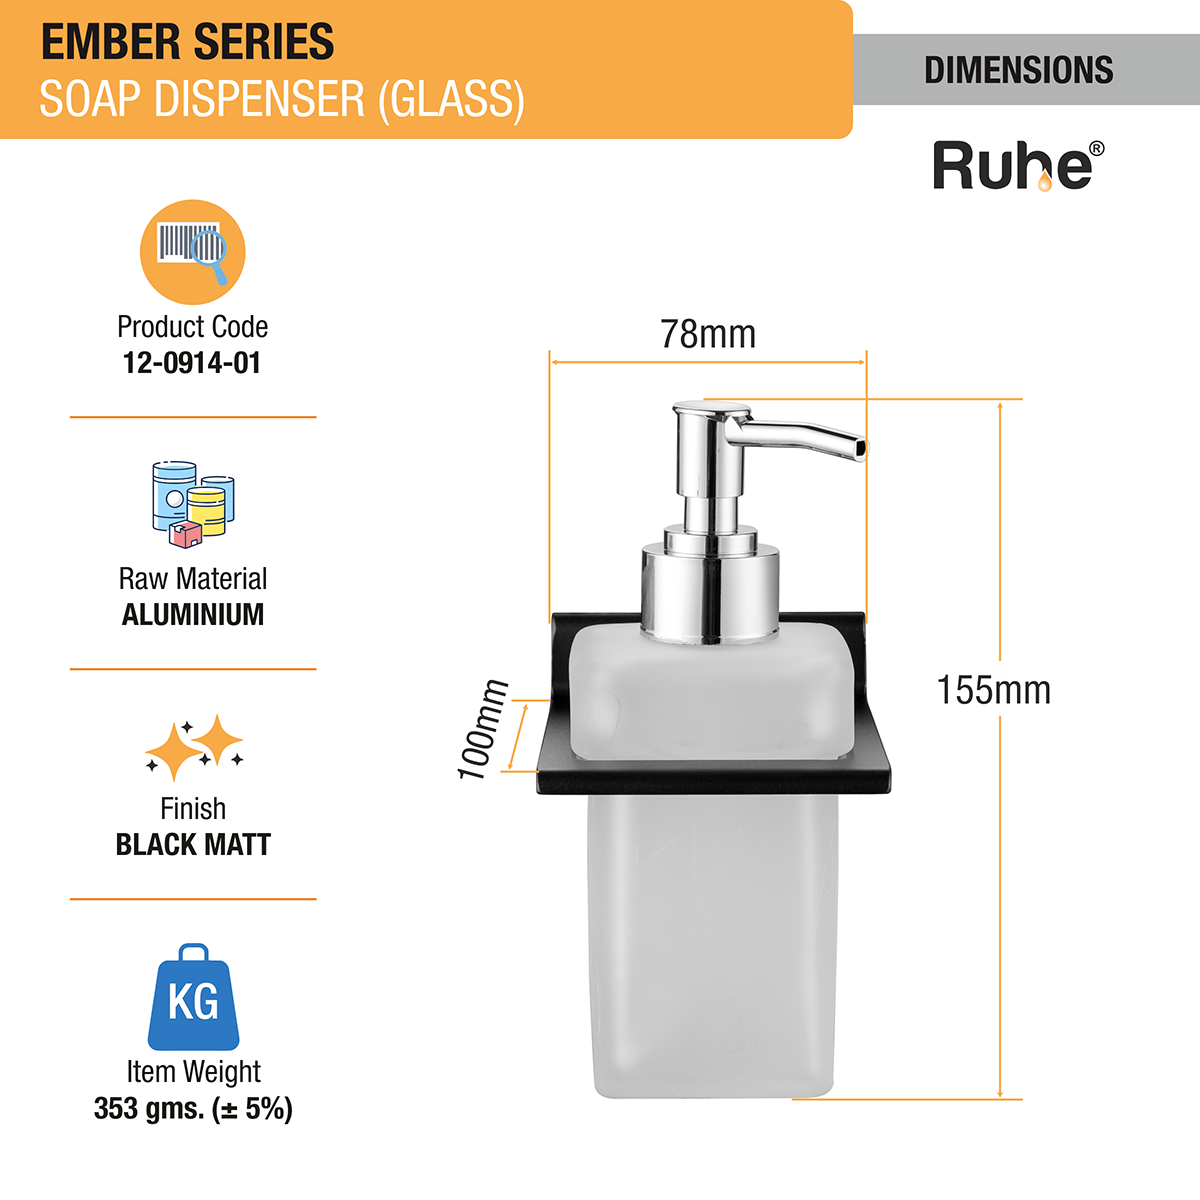 Ember Liquid Soap Dispenser (Space Aluminium) dimensions and sizes